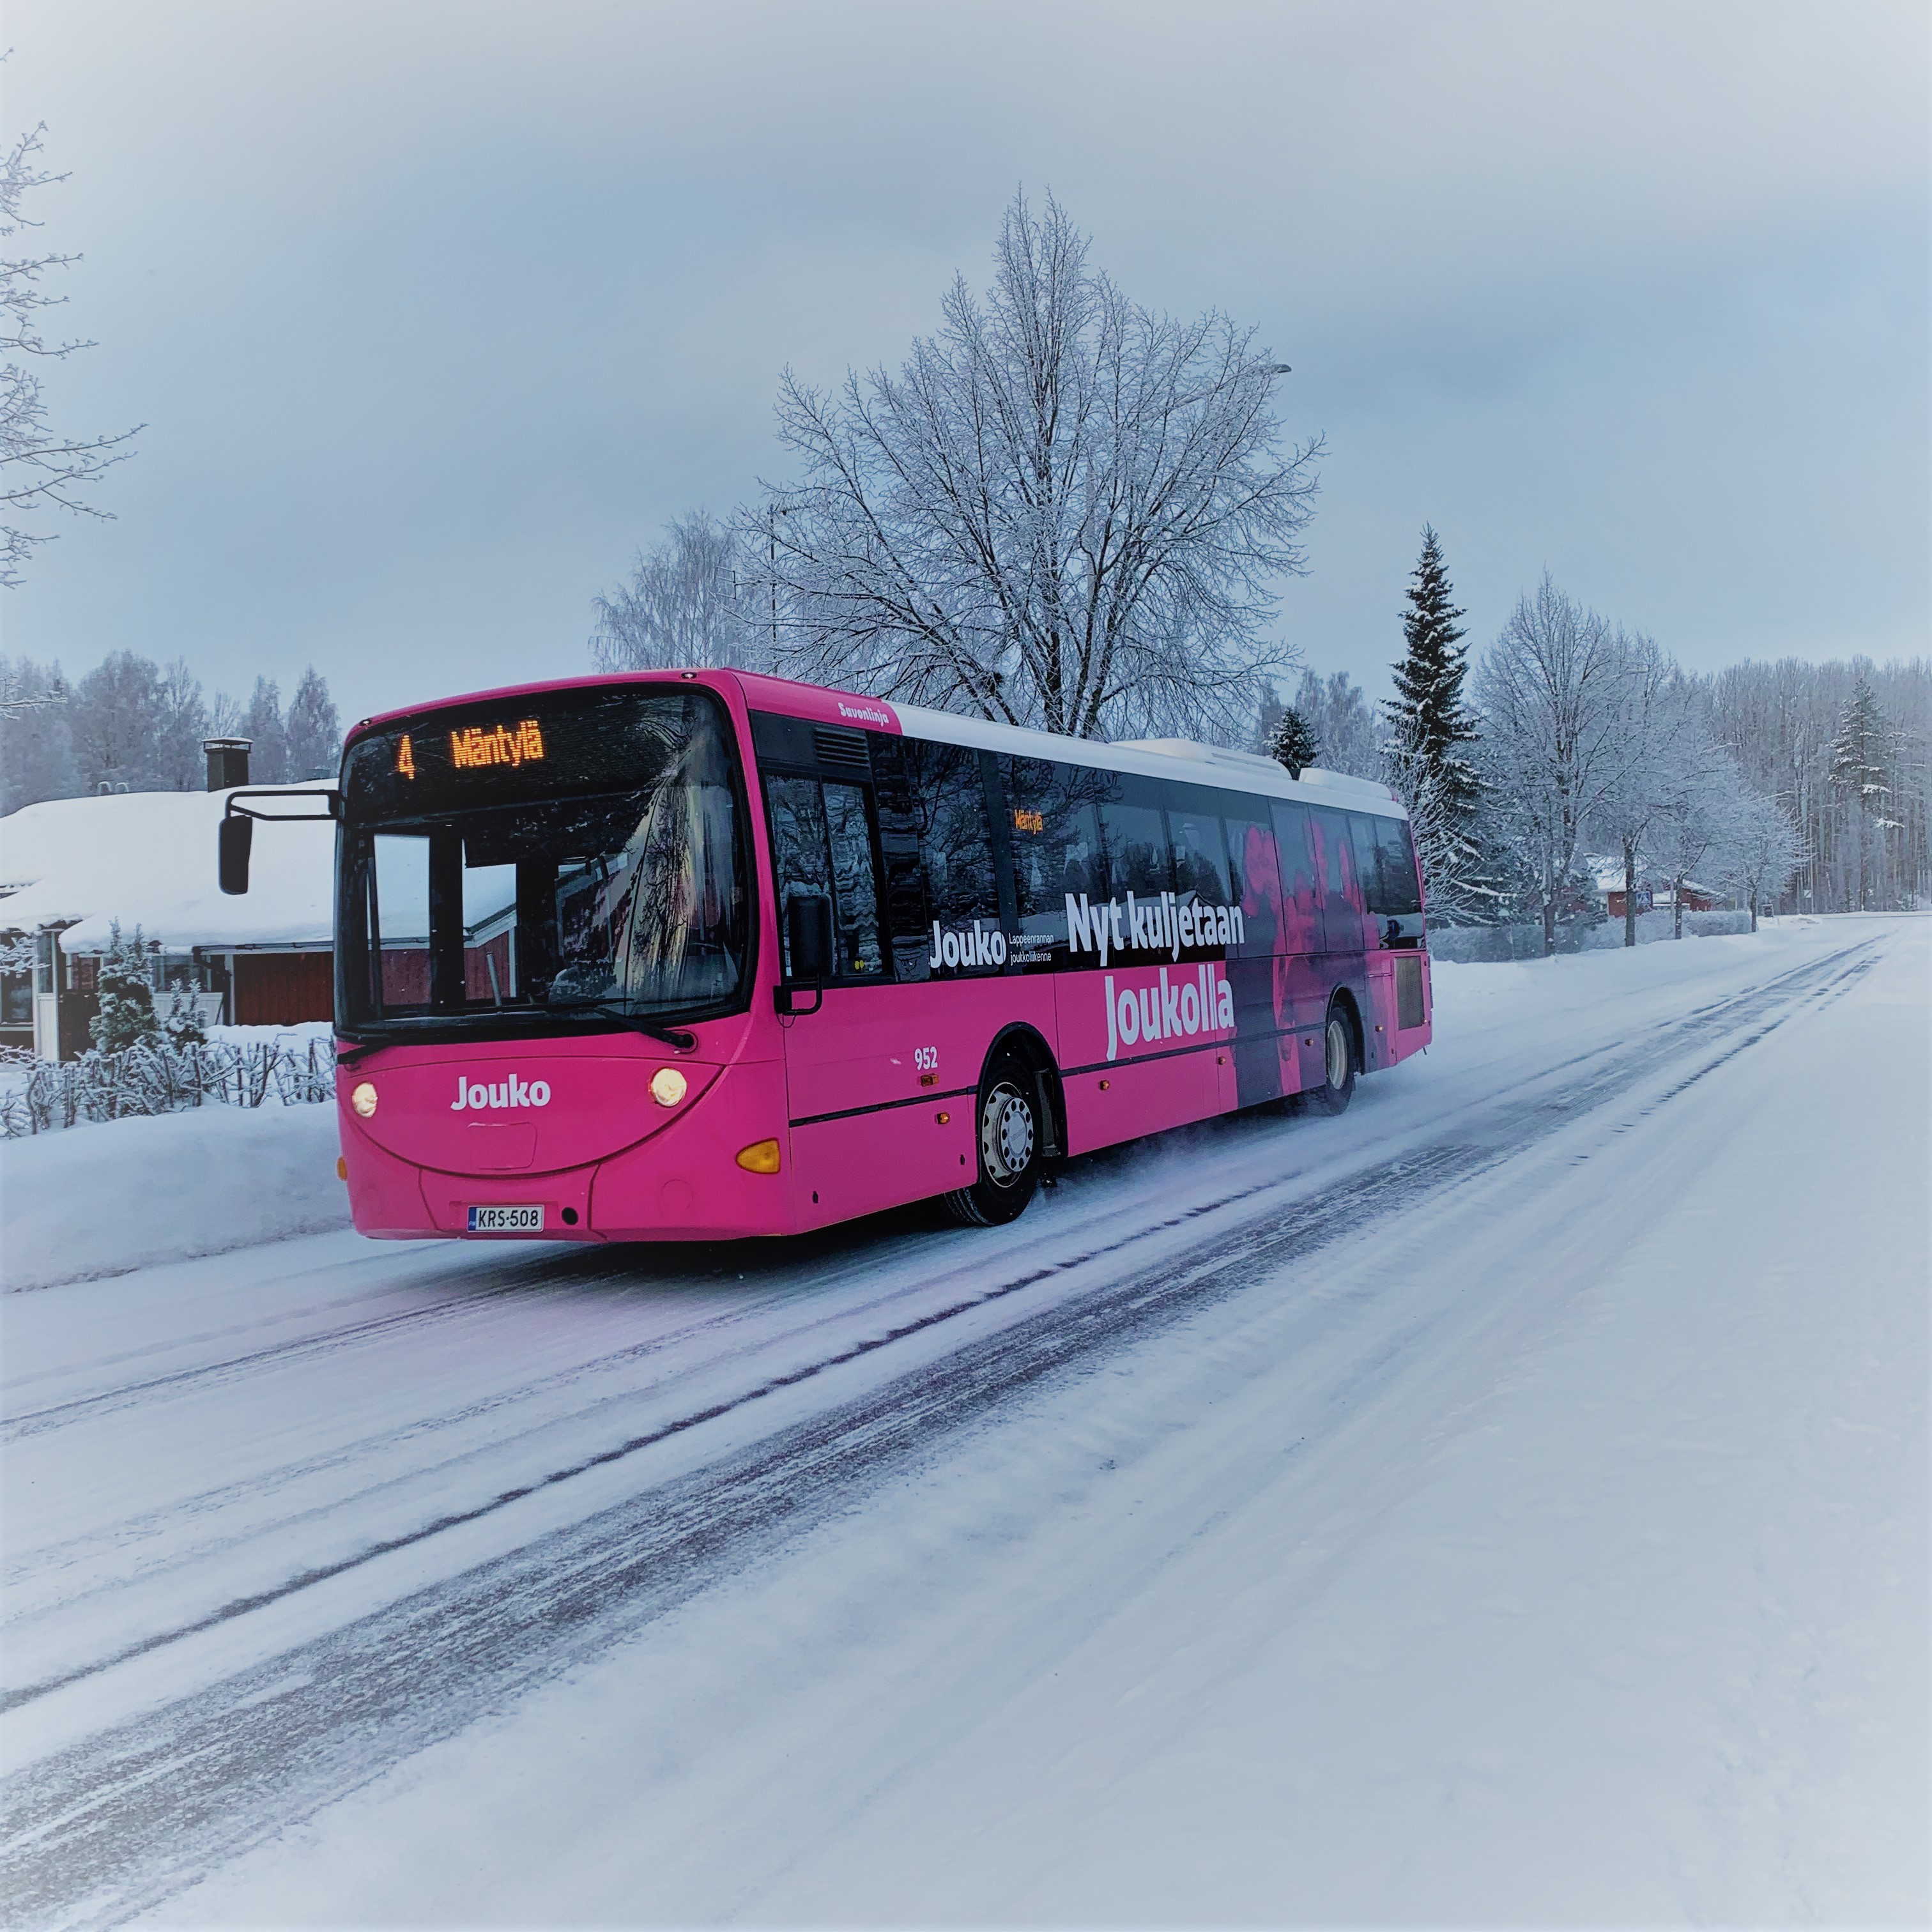 Pinkki bussi talvisella, lumisella tiellä. Takana talo ja puita. Bussissa lukee ”4 Mäntylä” ”Jouko” ja ”Nyt kuljetaan Joukolla”.